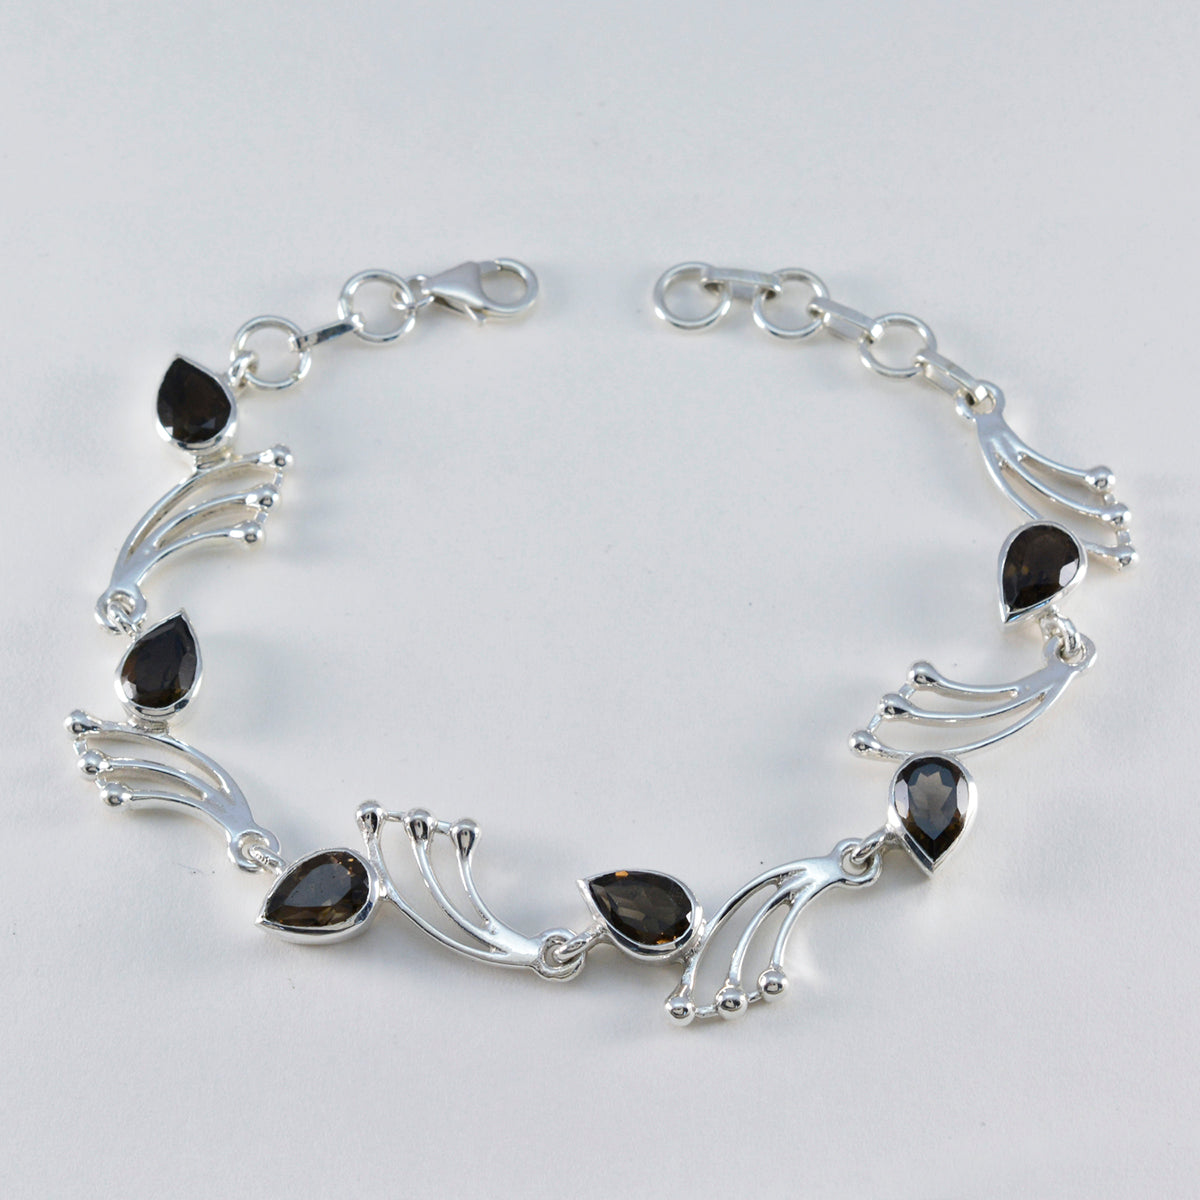 Riyo souhaitable bracelet en argent sterling 925 pour fille bracelet à quartz fumé bracelet à griffes avec hameçon lien bracelet à breloques taille L 6-8,5 pouces.